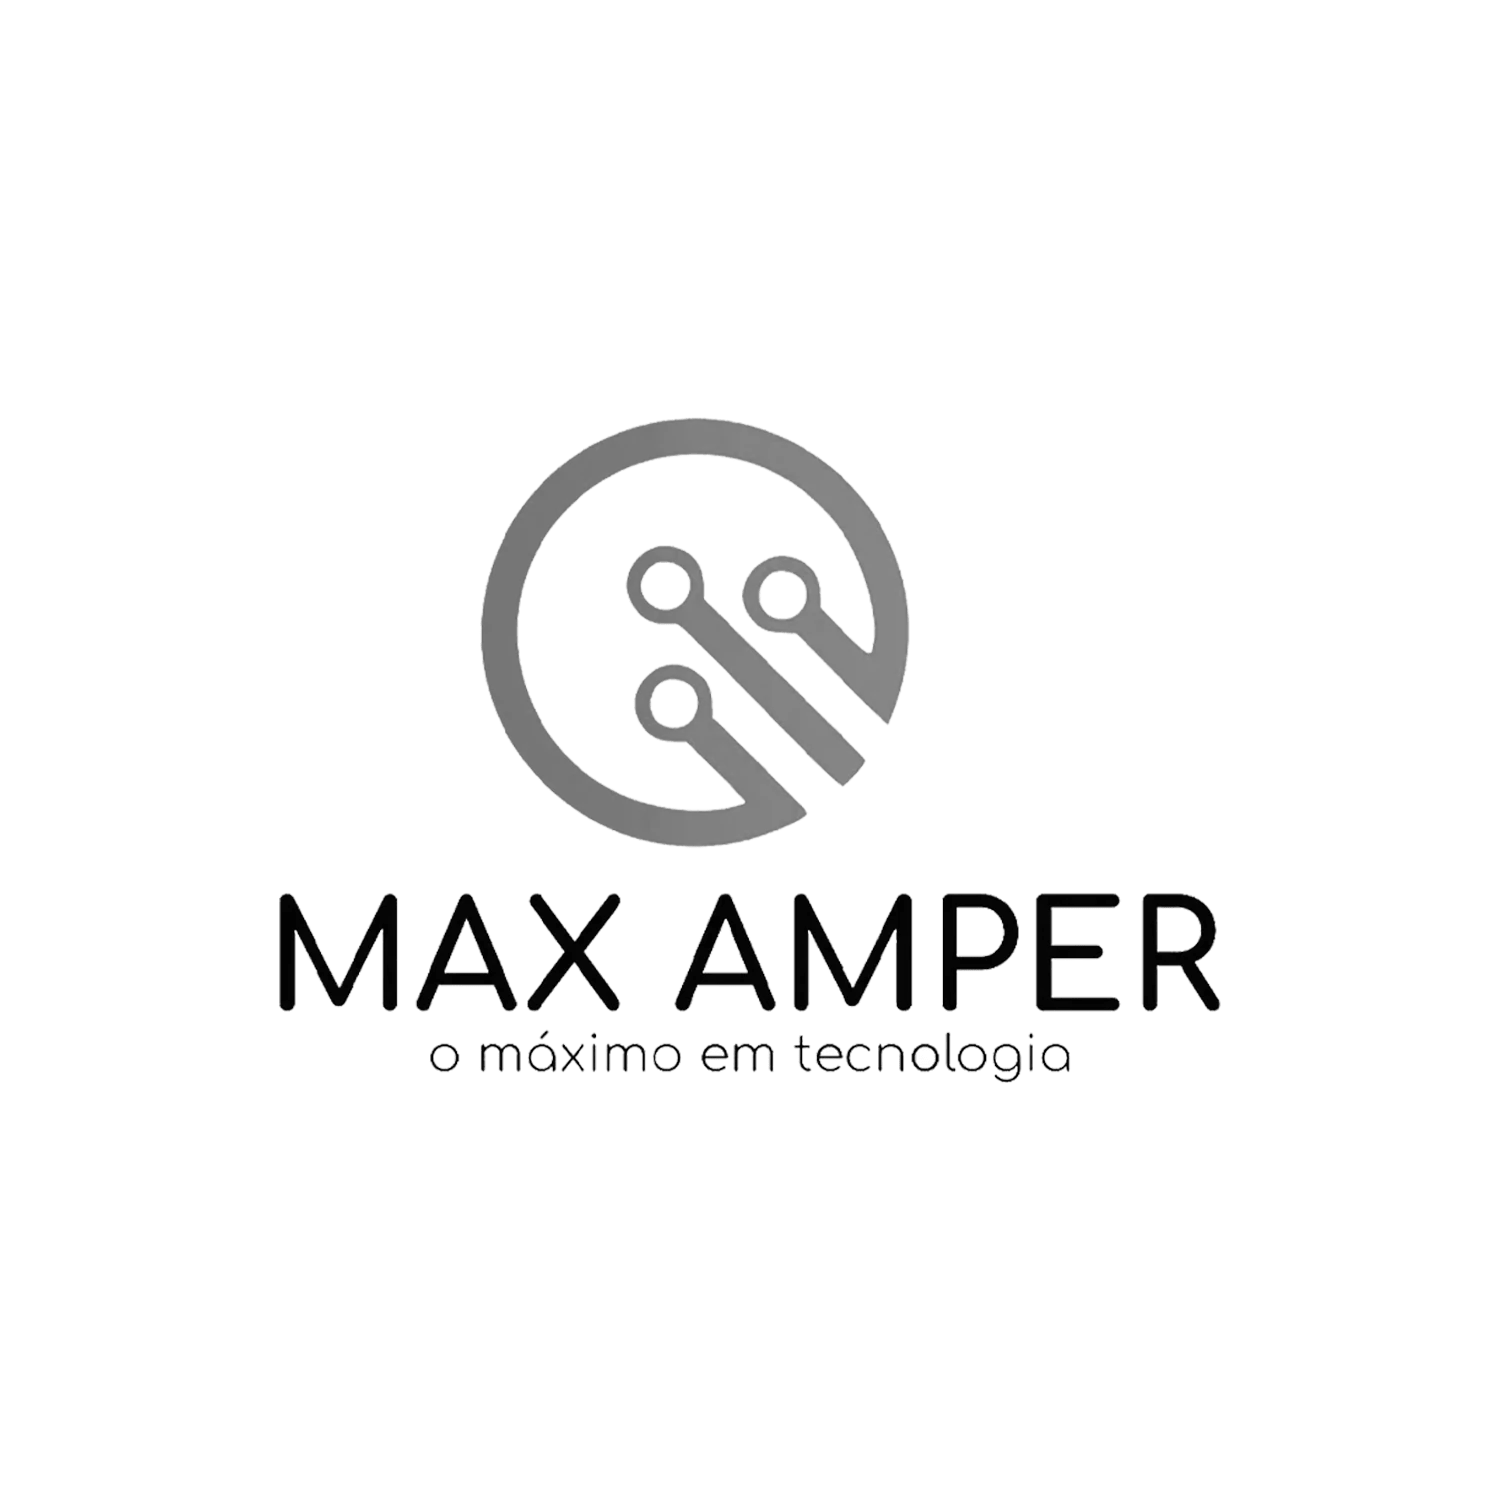 Maxamper